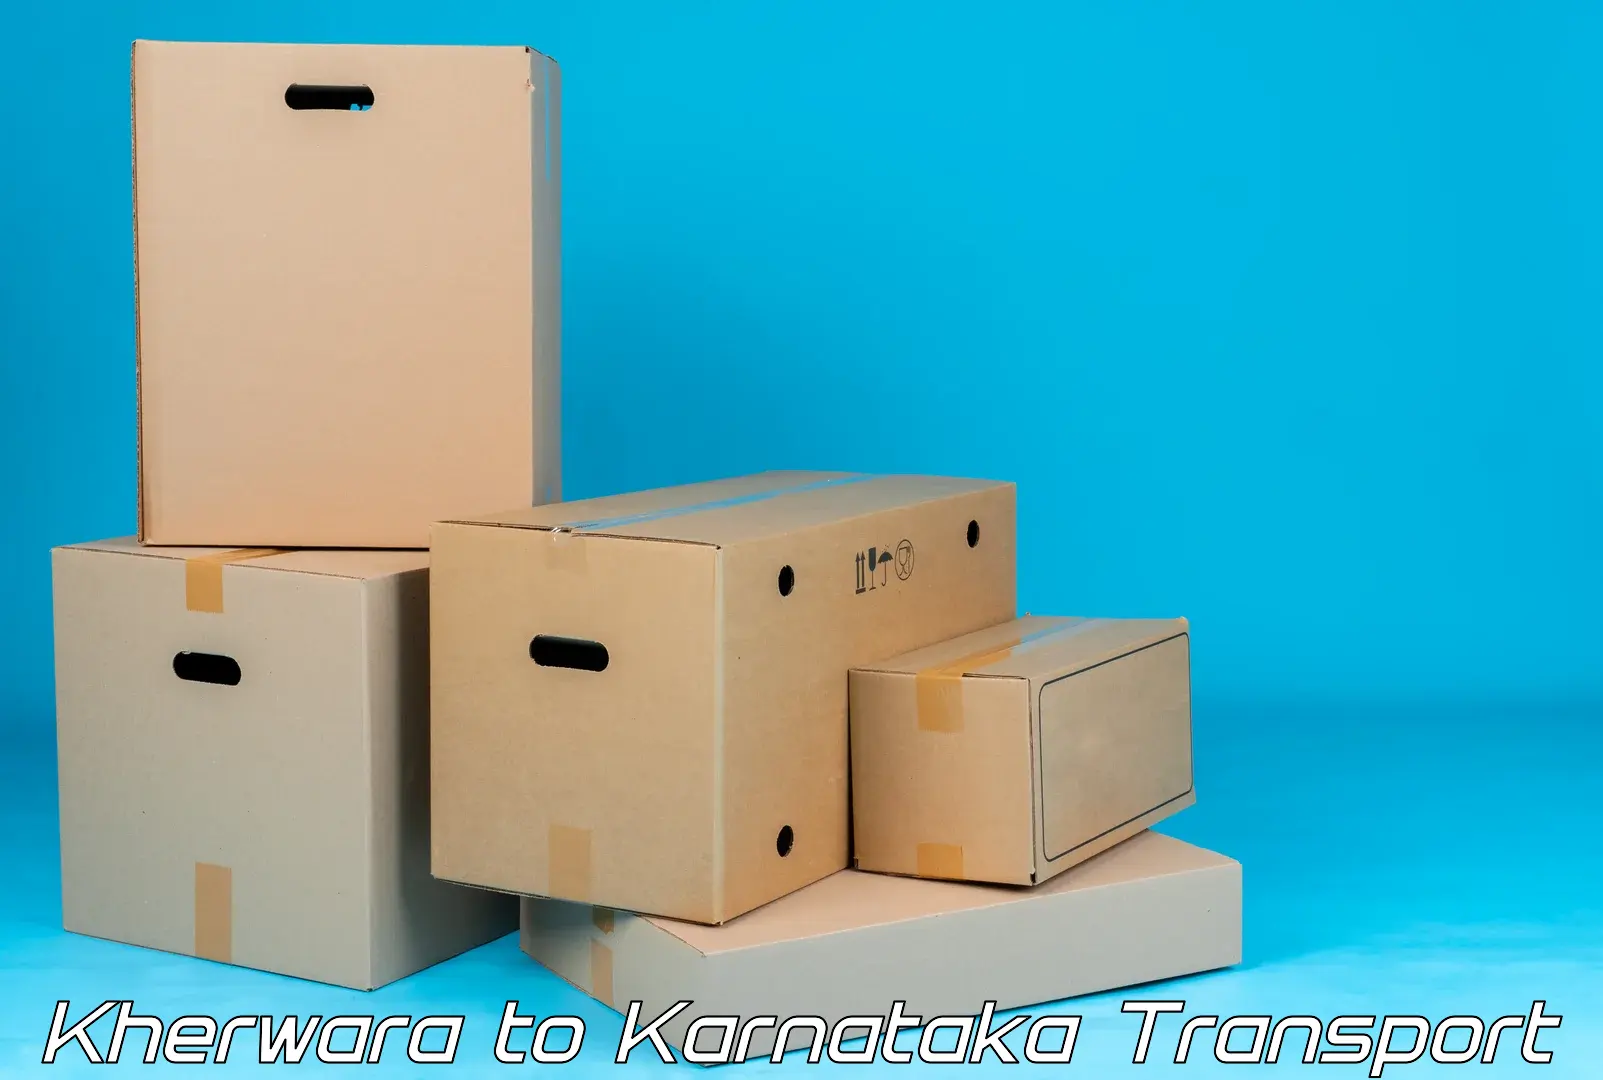 Pick up transport service Kherwara to Bangarapet